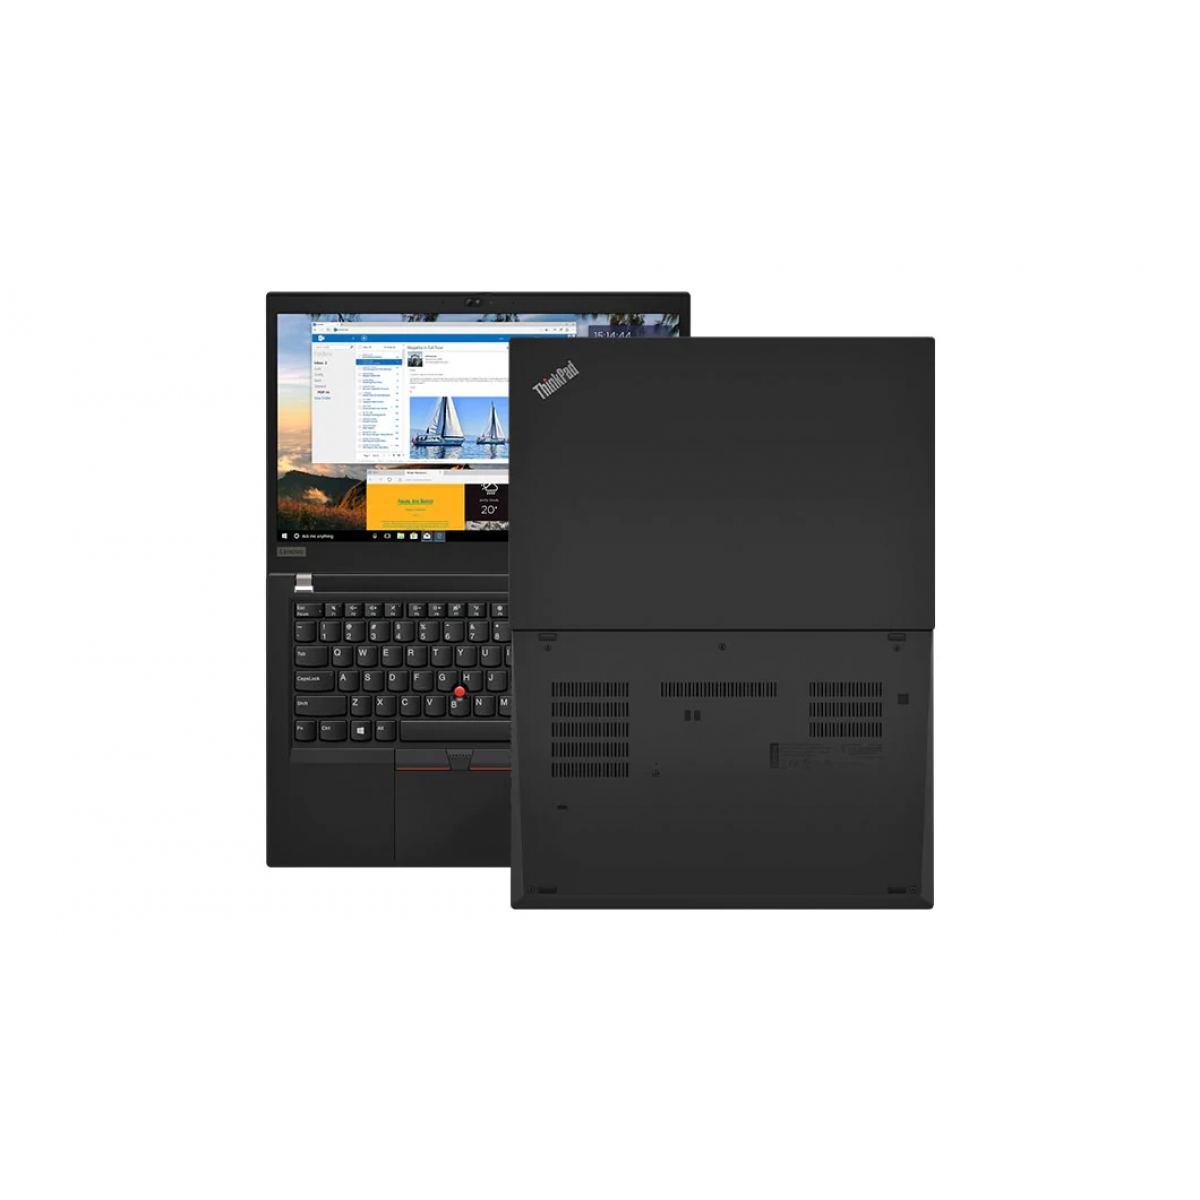 Lenovo Thinkpad T490 (i5-8265U/ 8GB/ 256GB/ 14 inch/ FHD/ Windows 10)